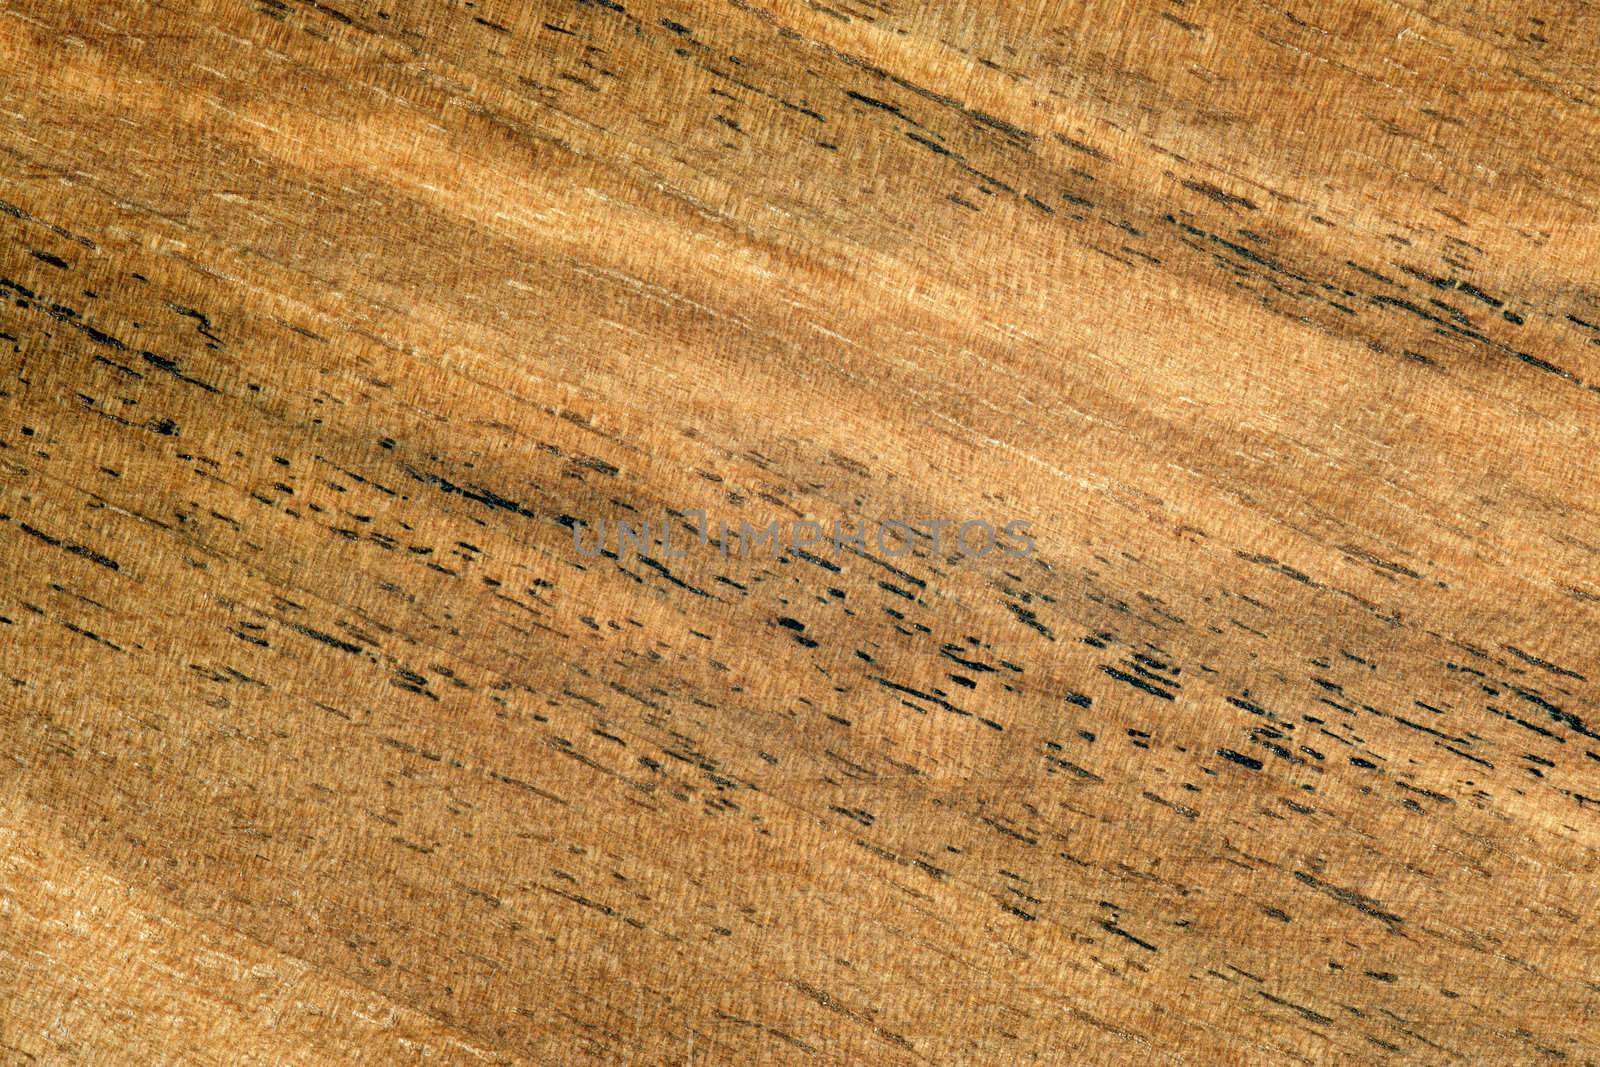 Wood grain series 2 by sumners